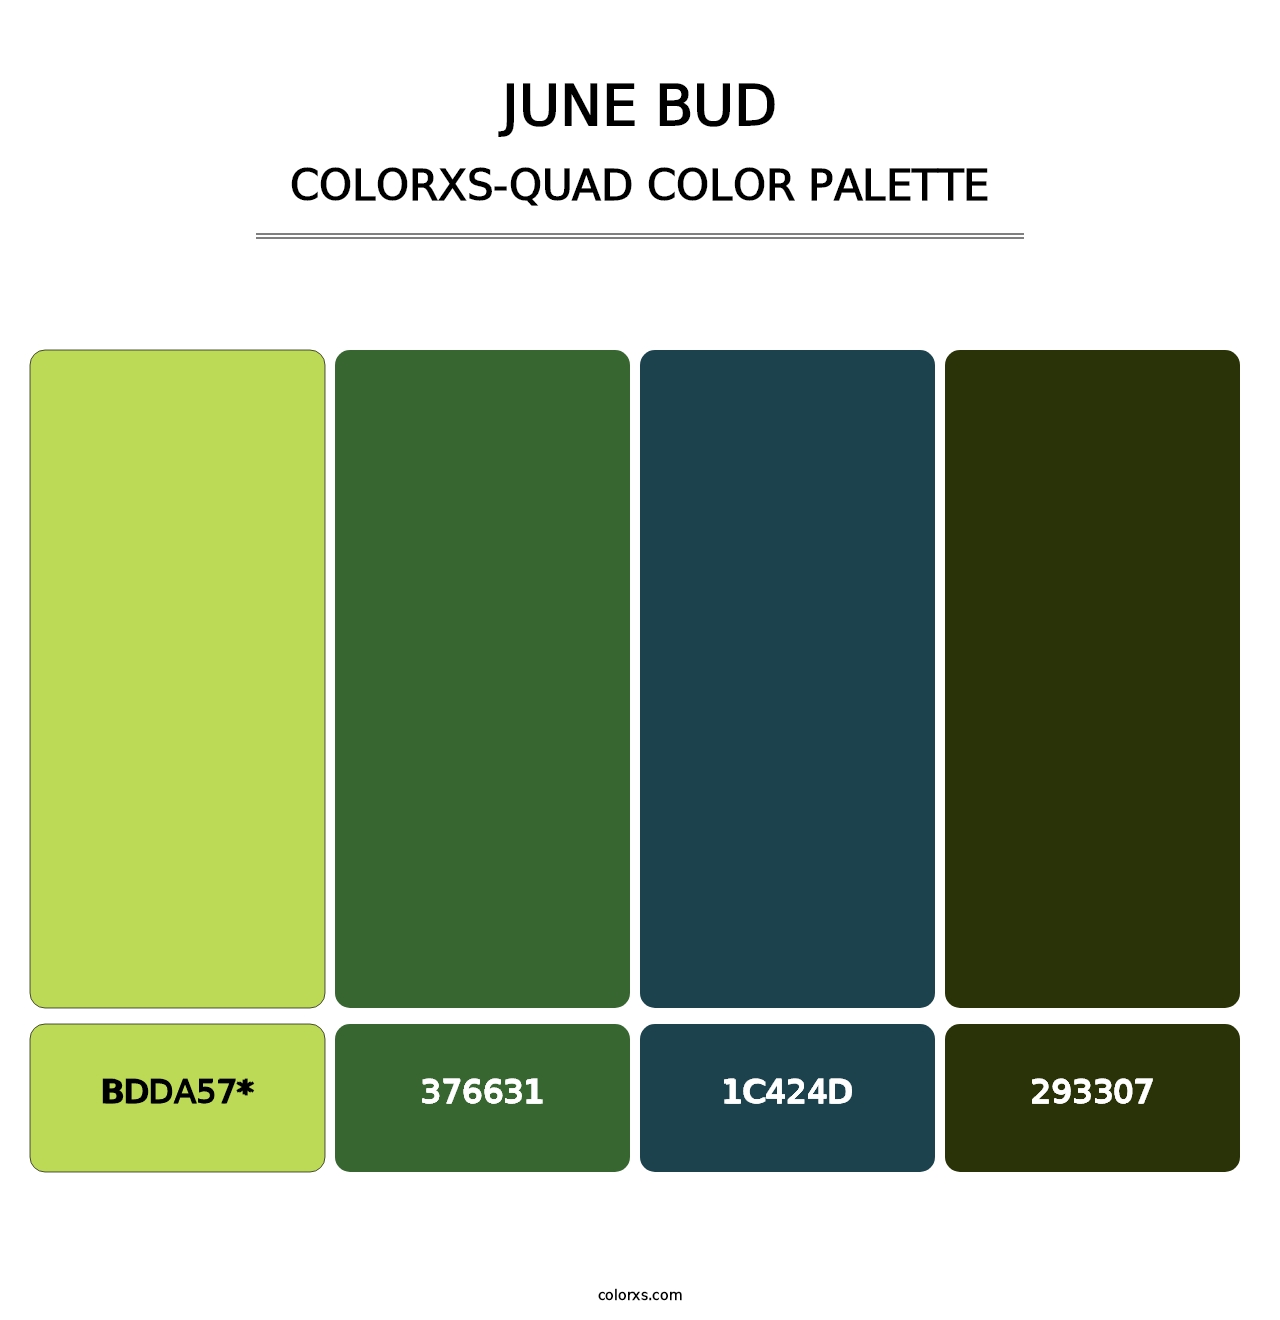 June Bud - Colorxs Quad Palette